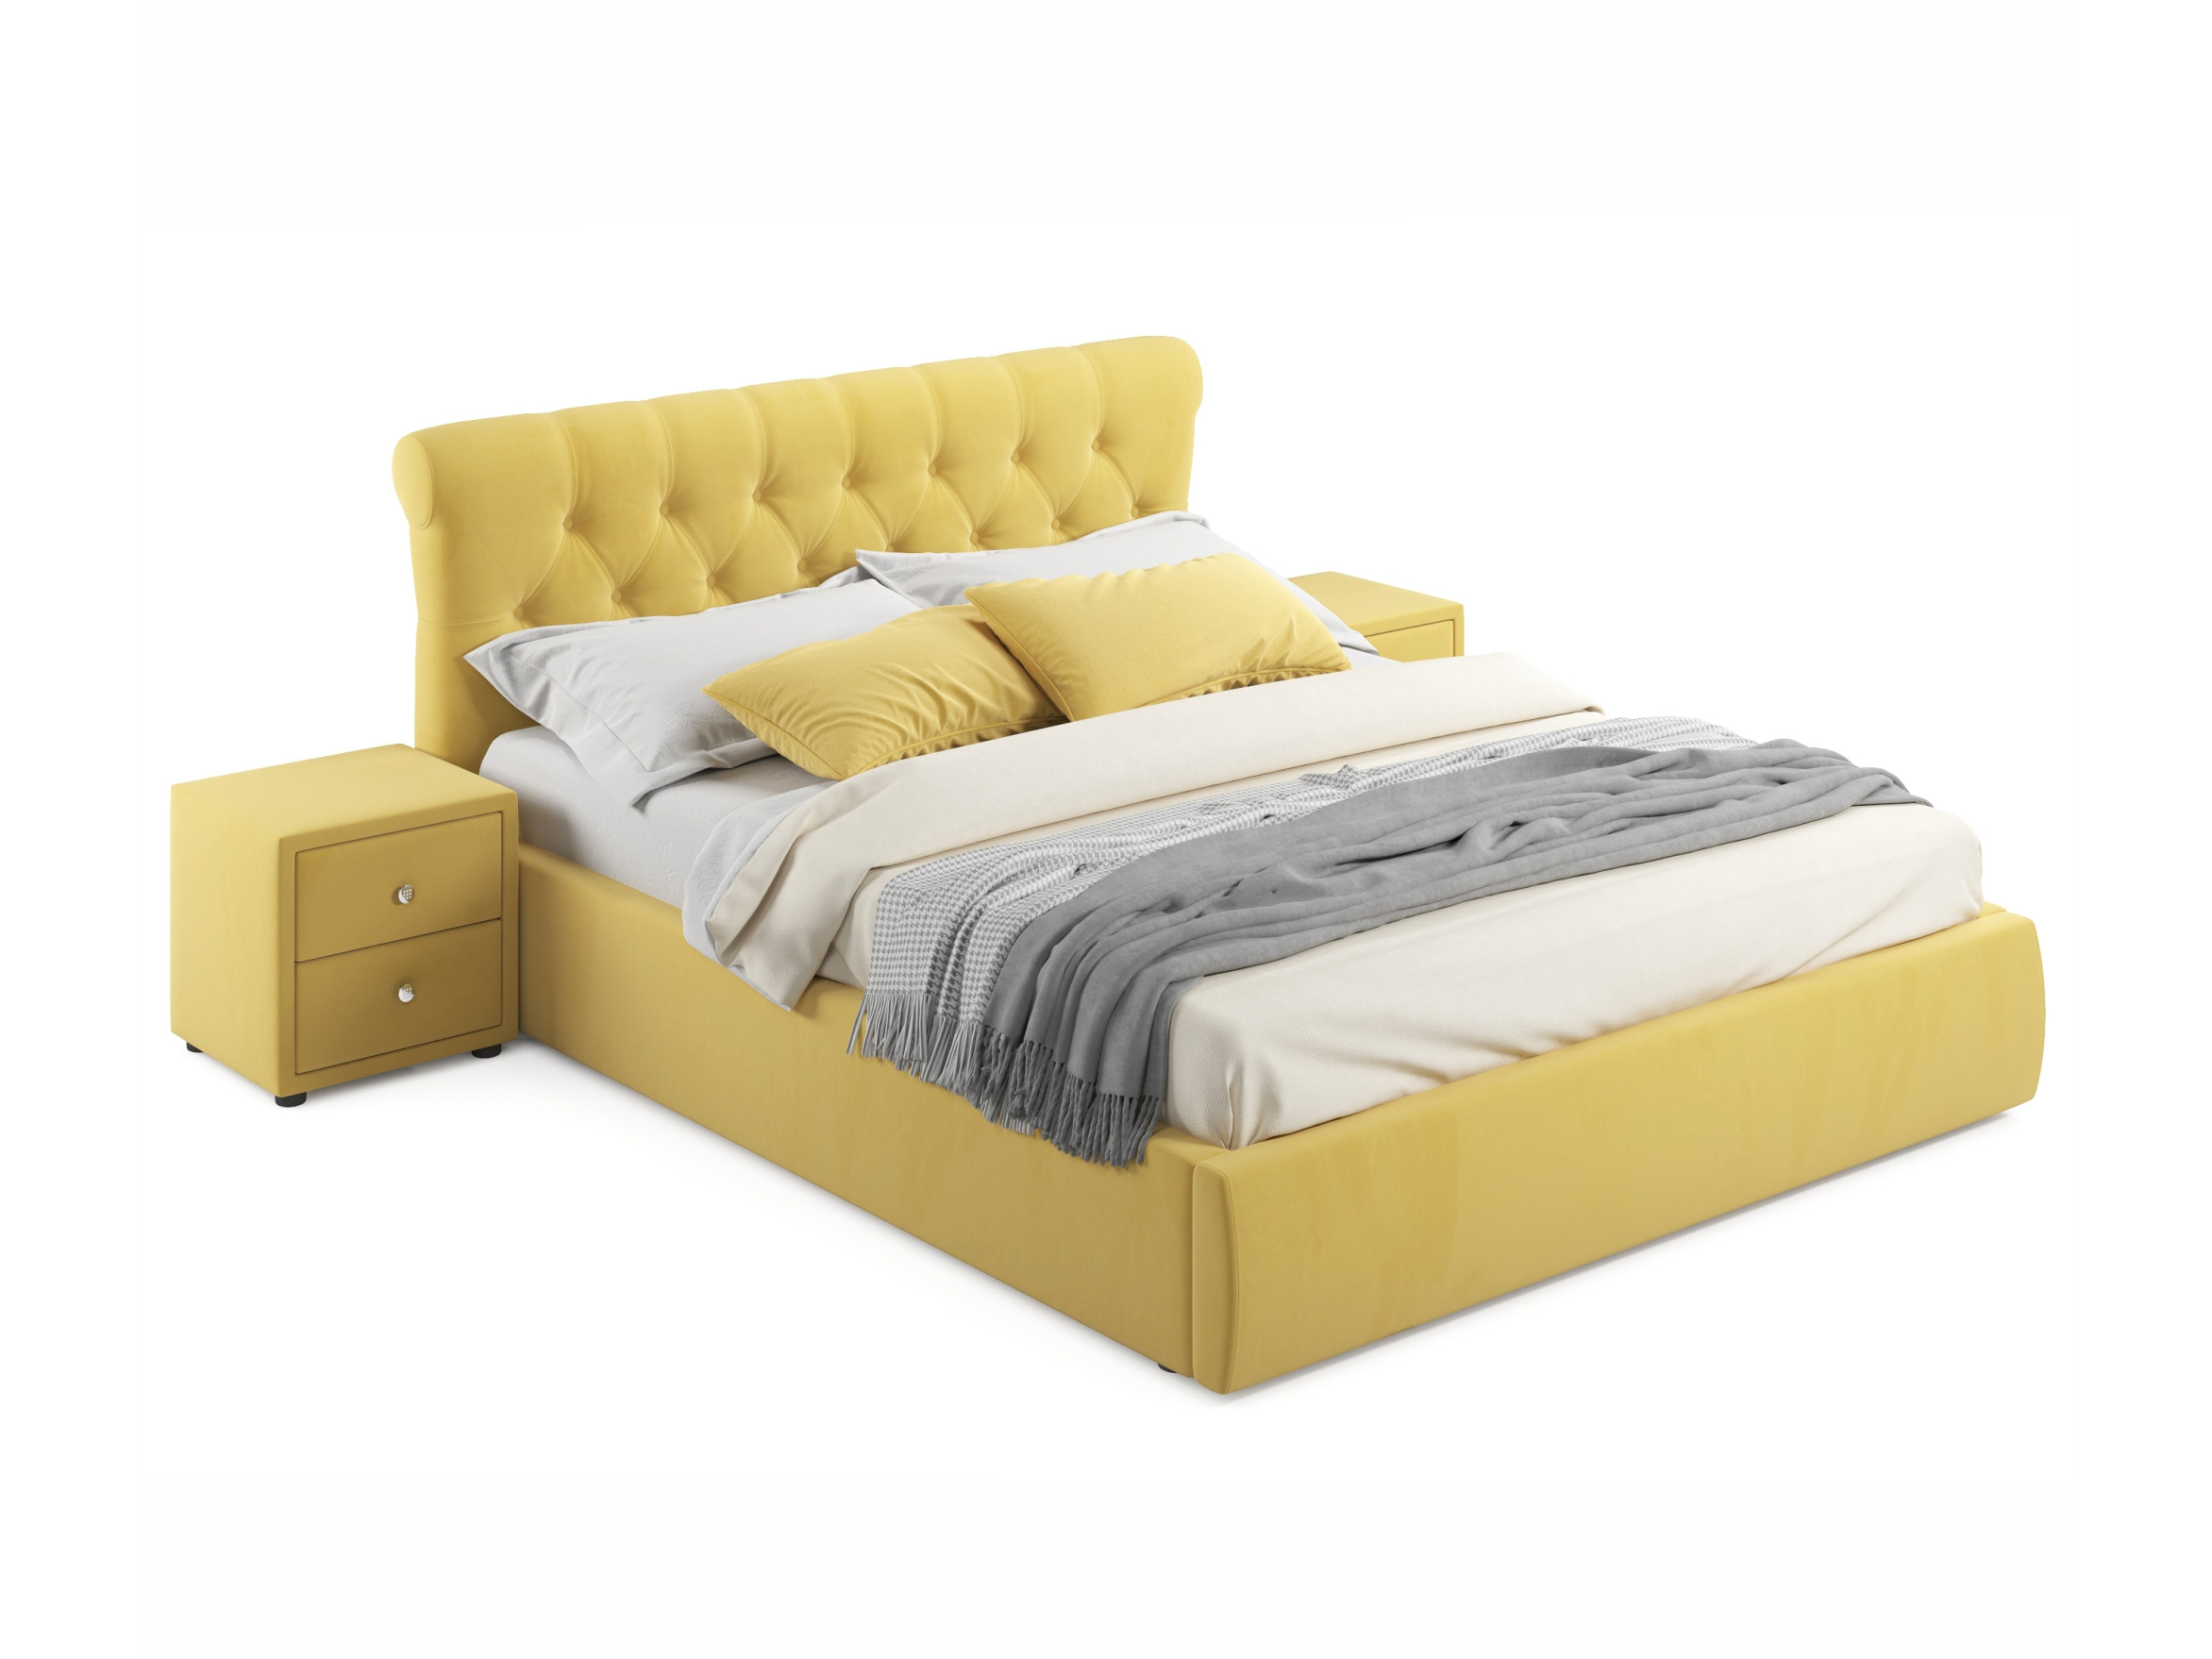 Мягкая кровать с тумбами Ameli 1600 желтая с подъемным механизмом желтый, Желтый, Велюр, ДСП мягкая кровать с тумбами ameli 1600 желтая с подъемным механизмом желтый желтый велюр дсп